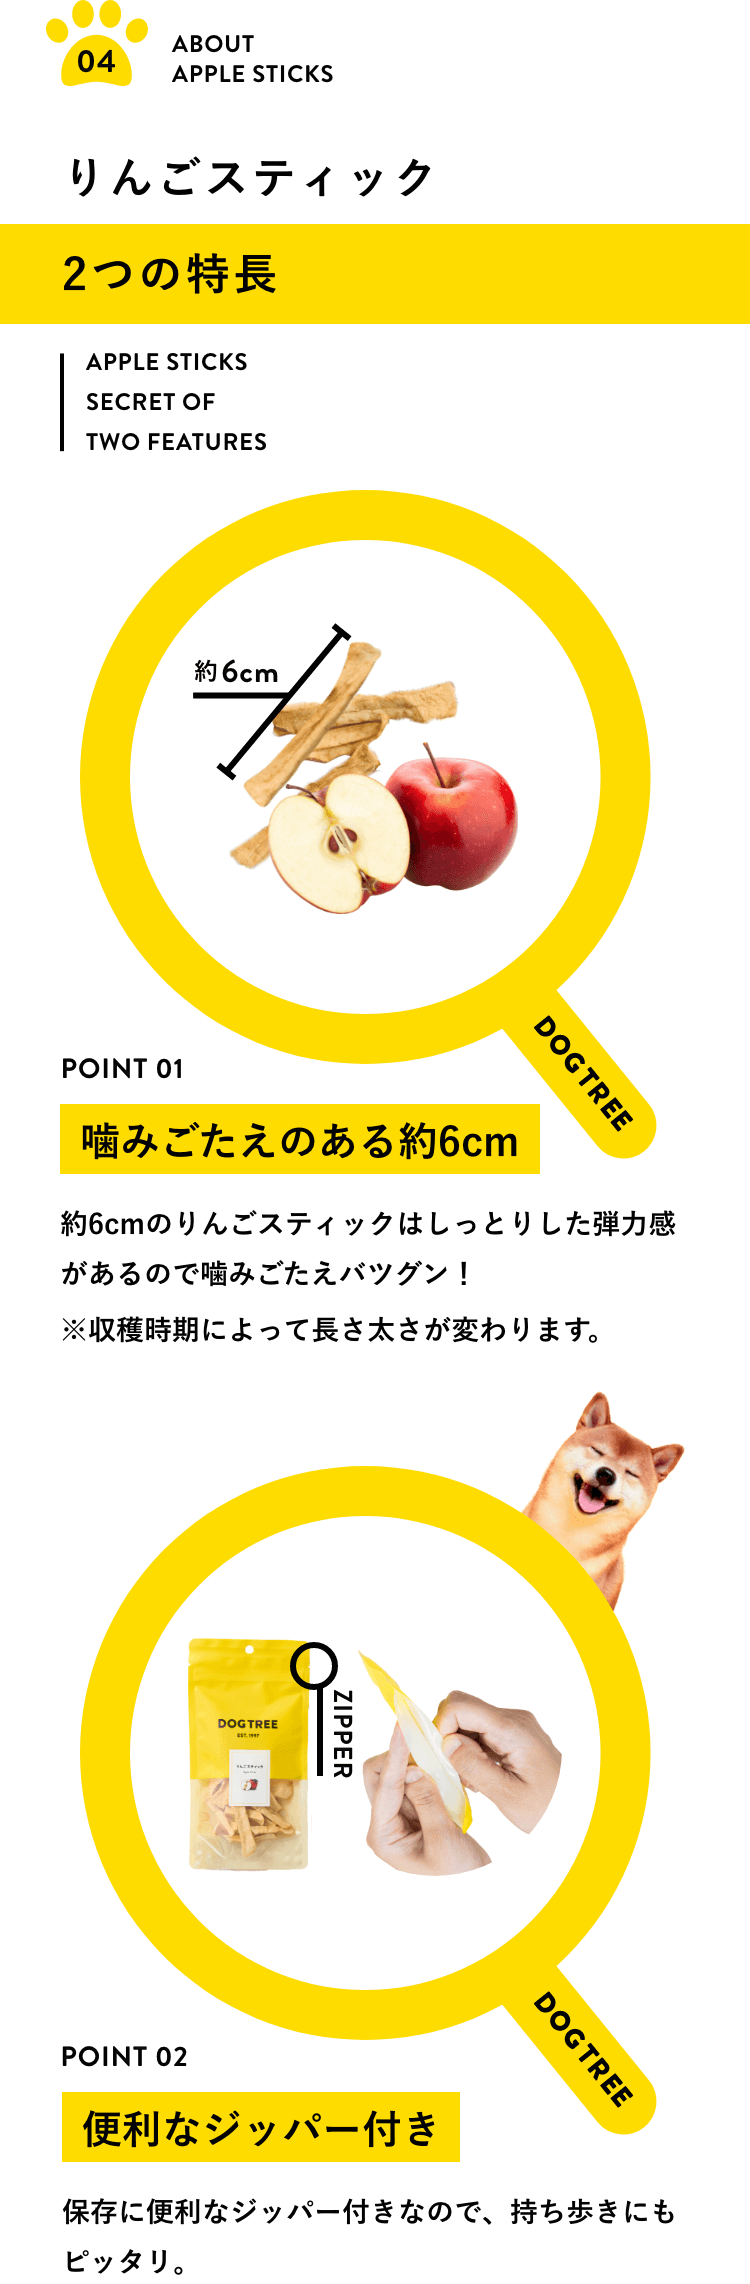 りんごスティック2つの特長！（1）噛みごたえのある約6cm！6cmのりんごスティックはしっとりした弾力感があるので噛みごたえバツグン！※収穫時期によって長さ太さが変わります。（2）便利なジッパー付き！保存に便利なジッパー付きなので、持ち歩きにもピッタリ。